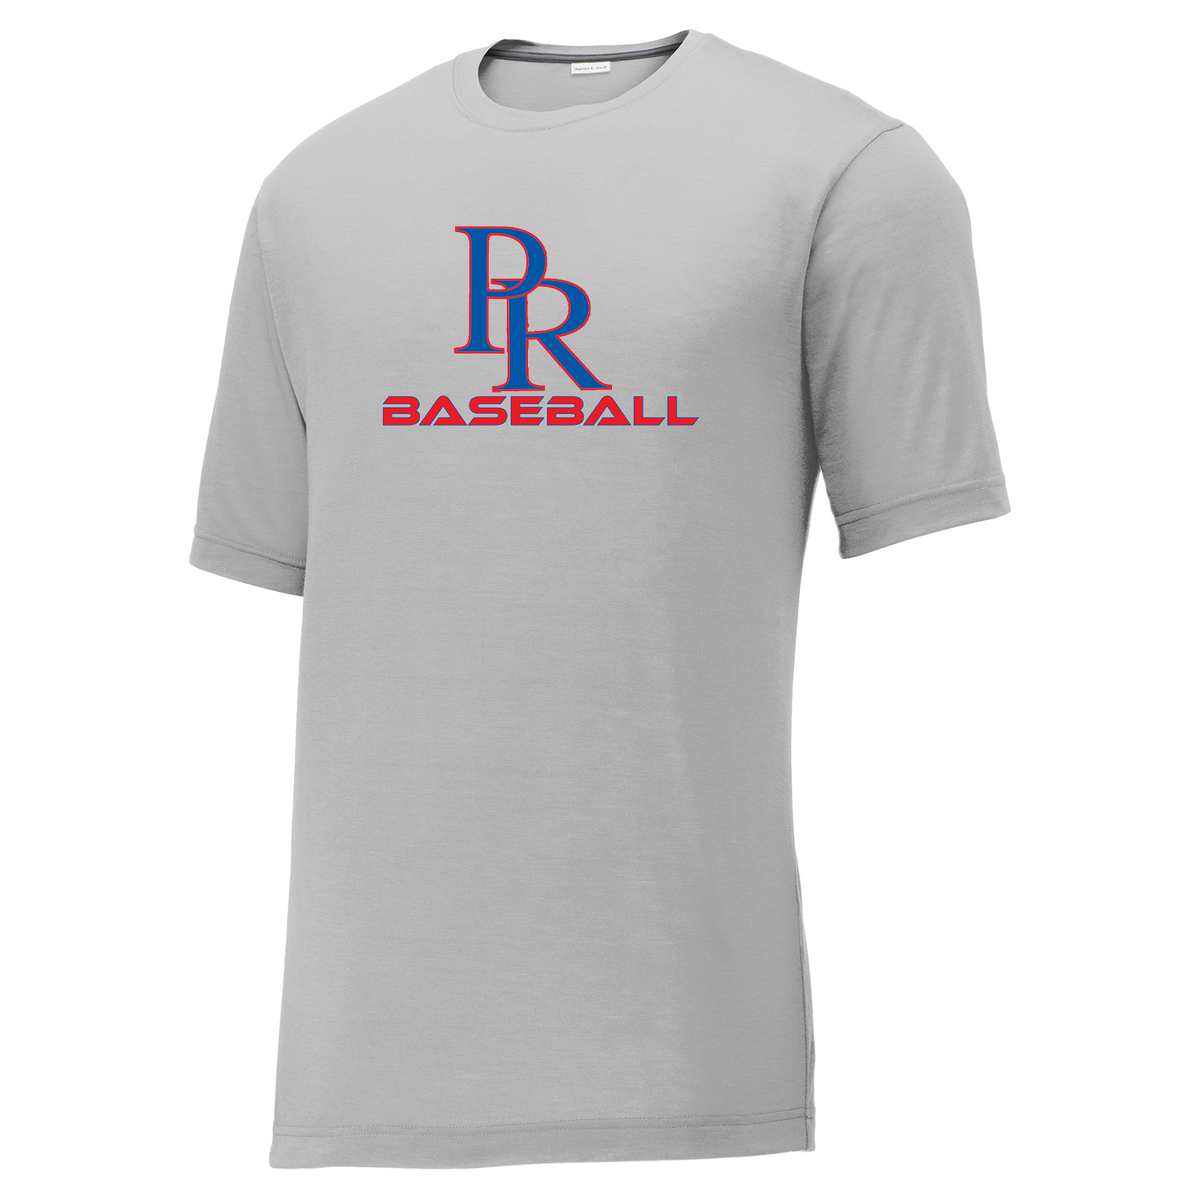 PR Baseball CottonTouch Performance T-Shirt